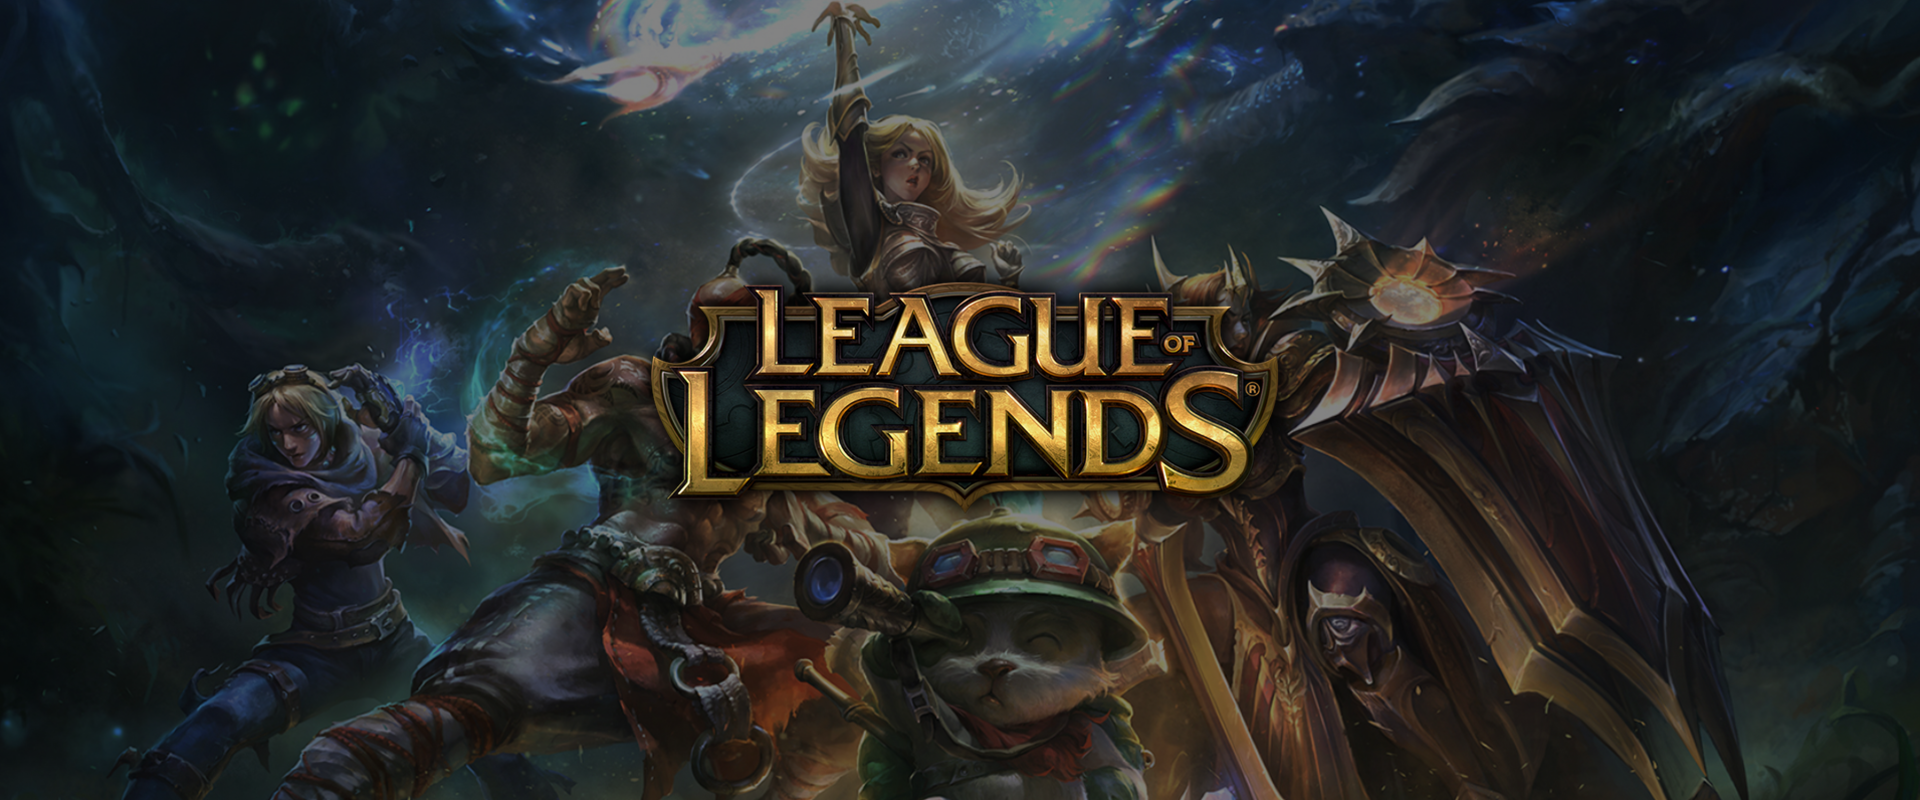 League of Legends valóságshow? Jöhet!